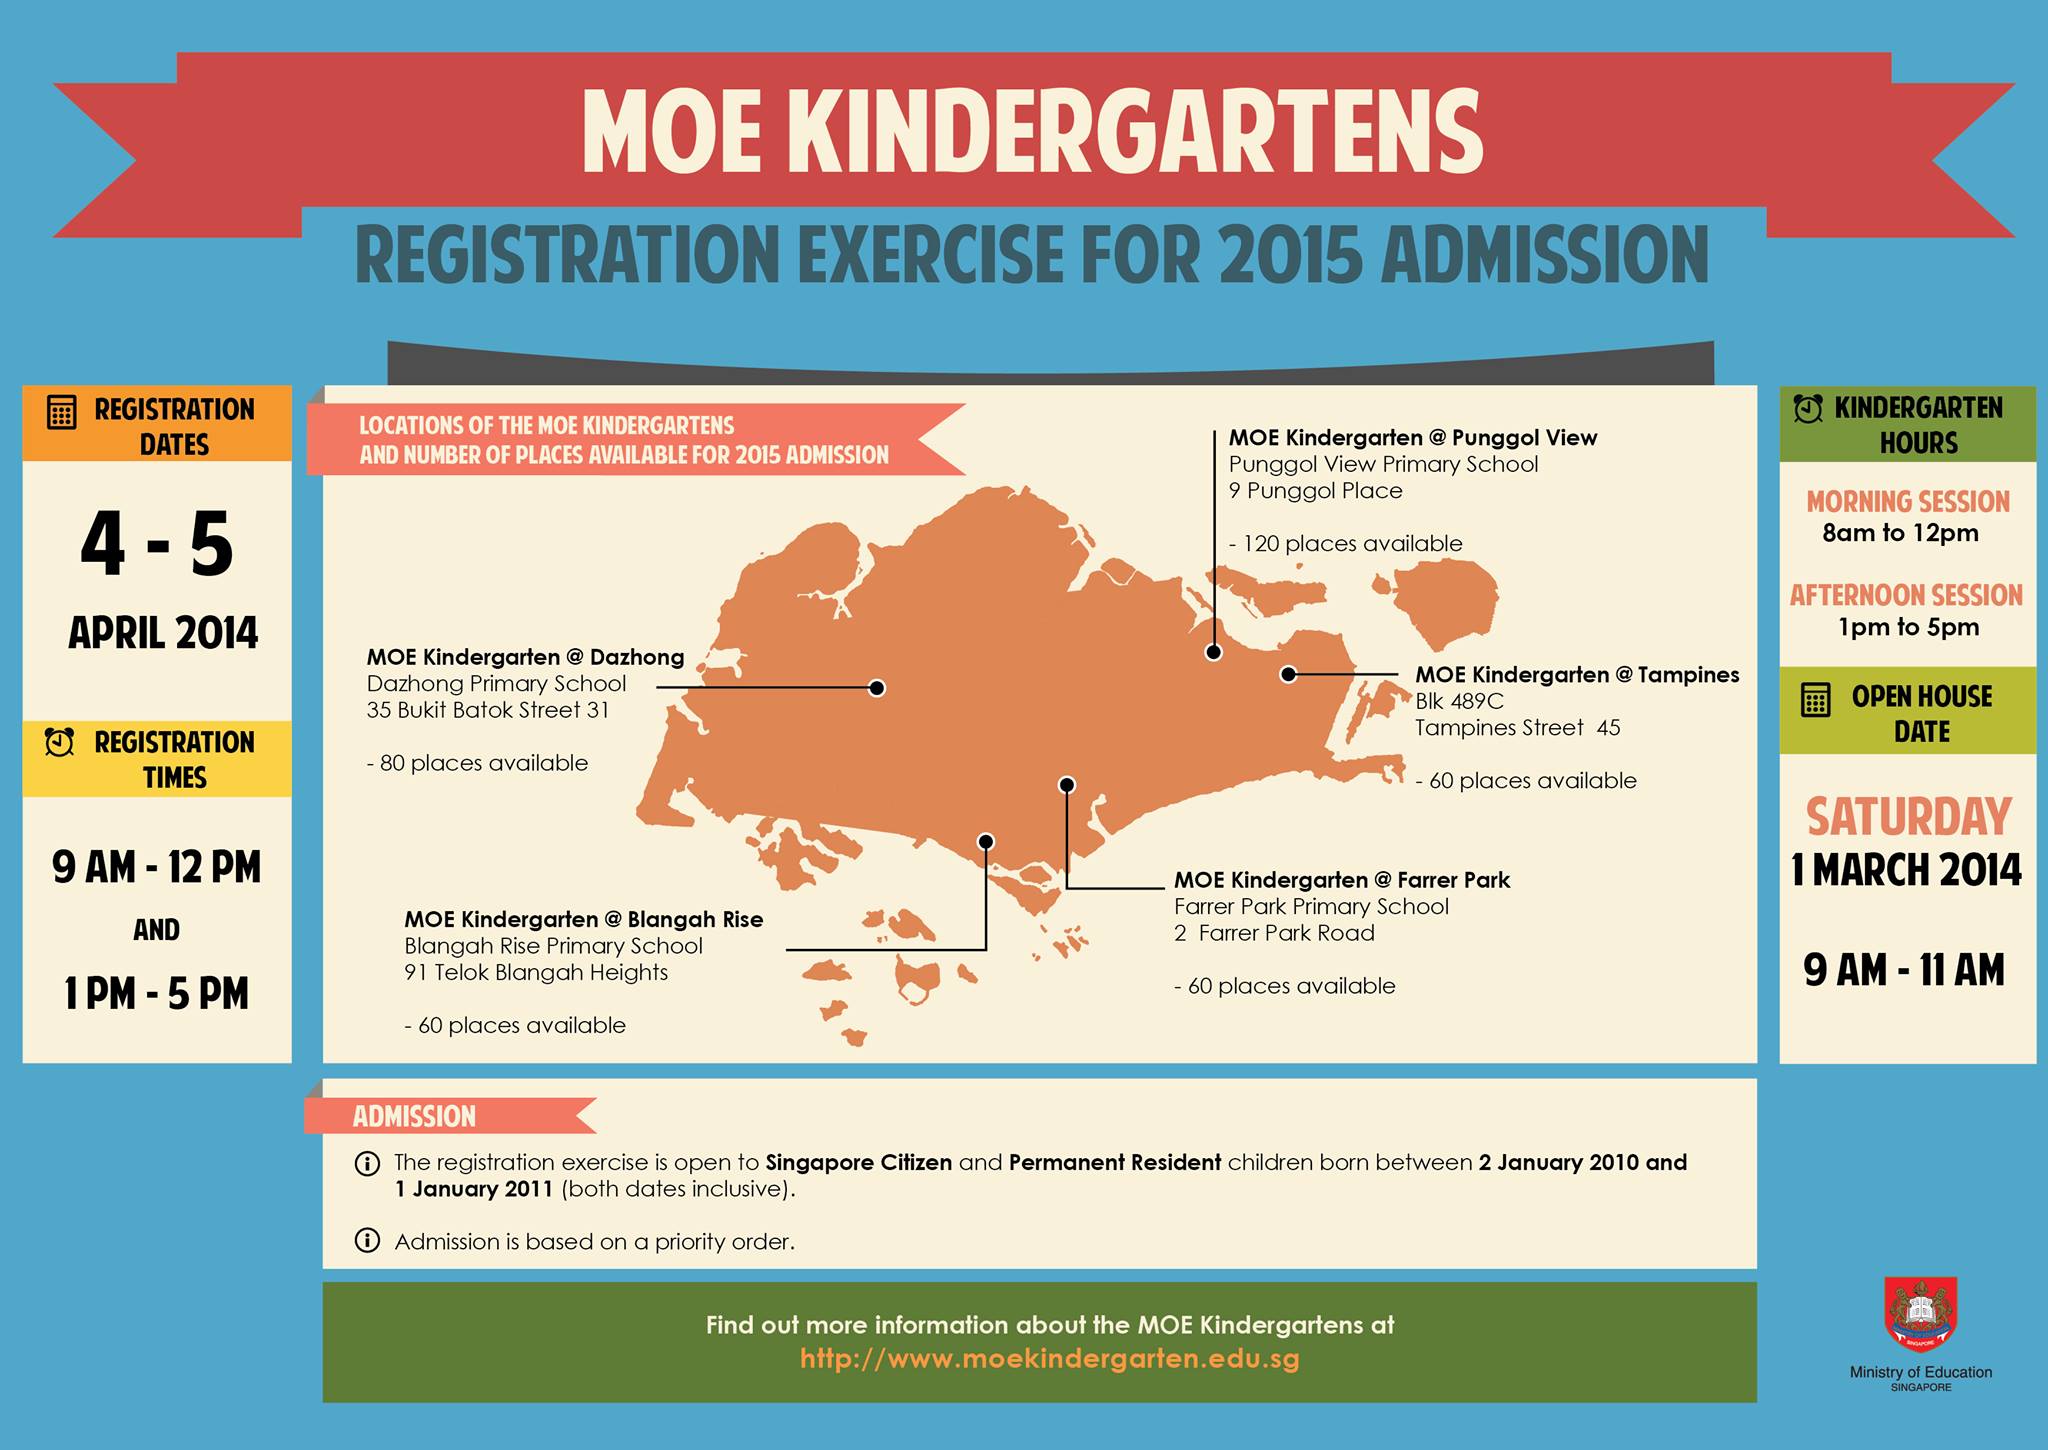 MOE Kindergartens - Registration Exercise for 2015 Admission